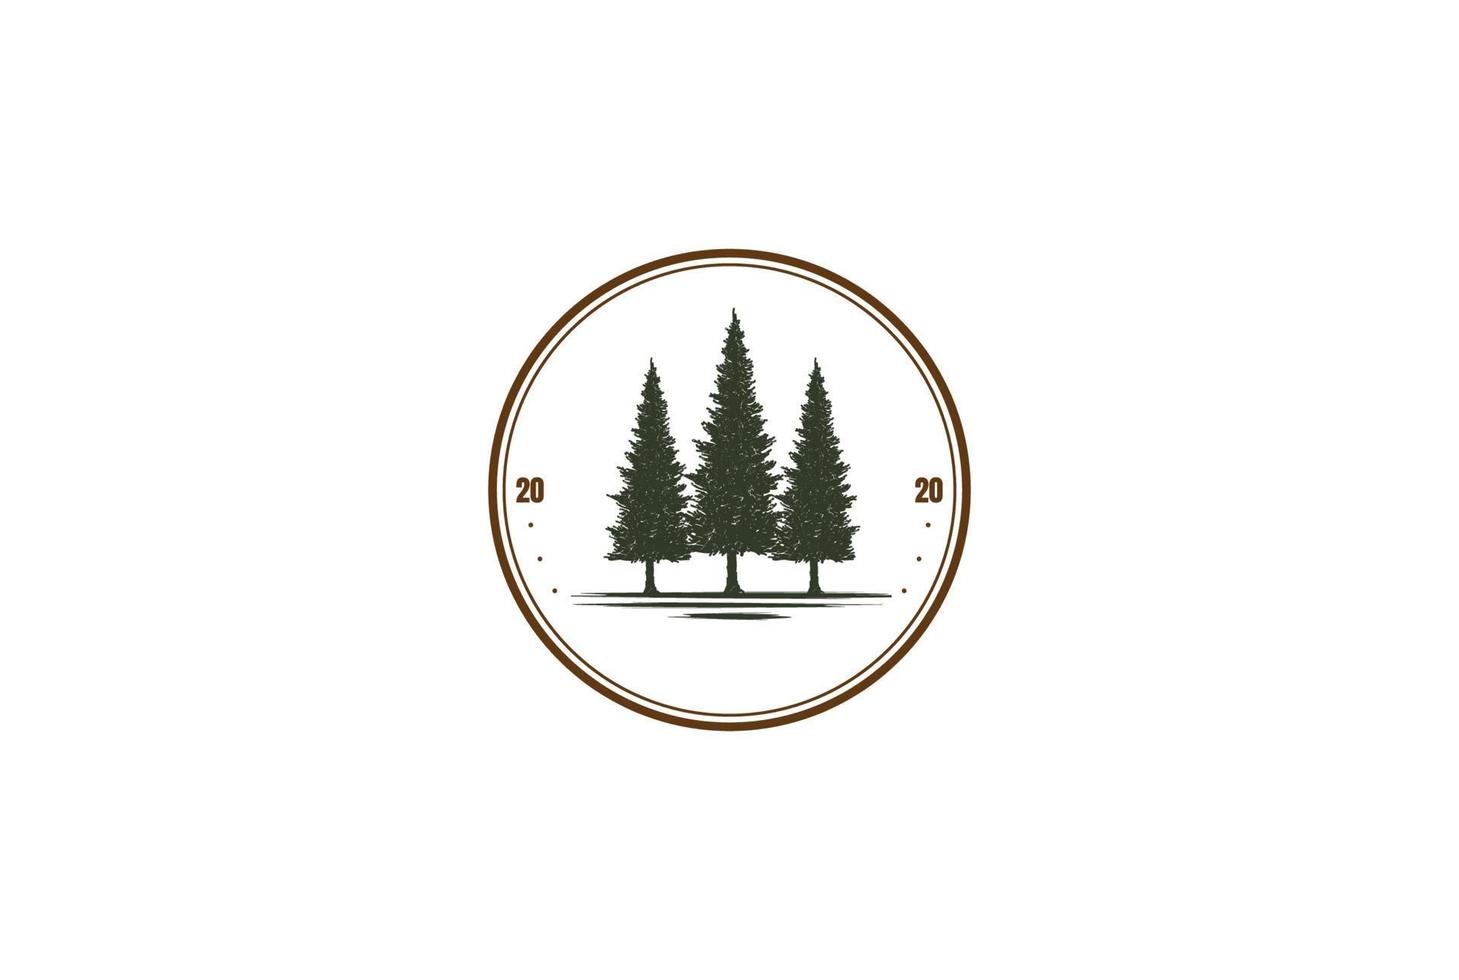 pinho rústico sempre-verde cedro cipreste larício conífera coníferas abetos floresta emblema emblema logotipo design vetor